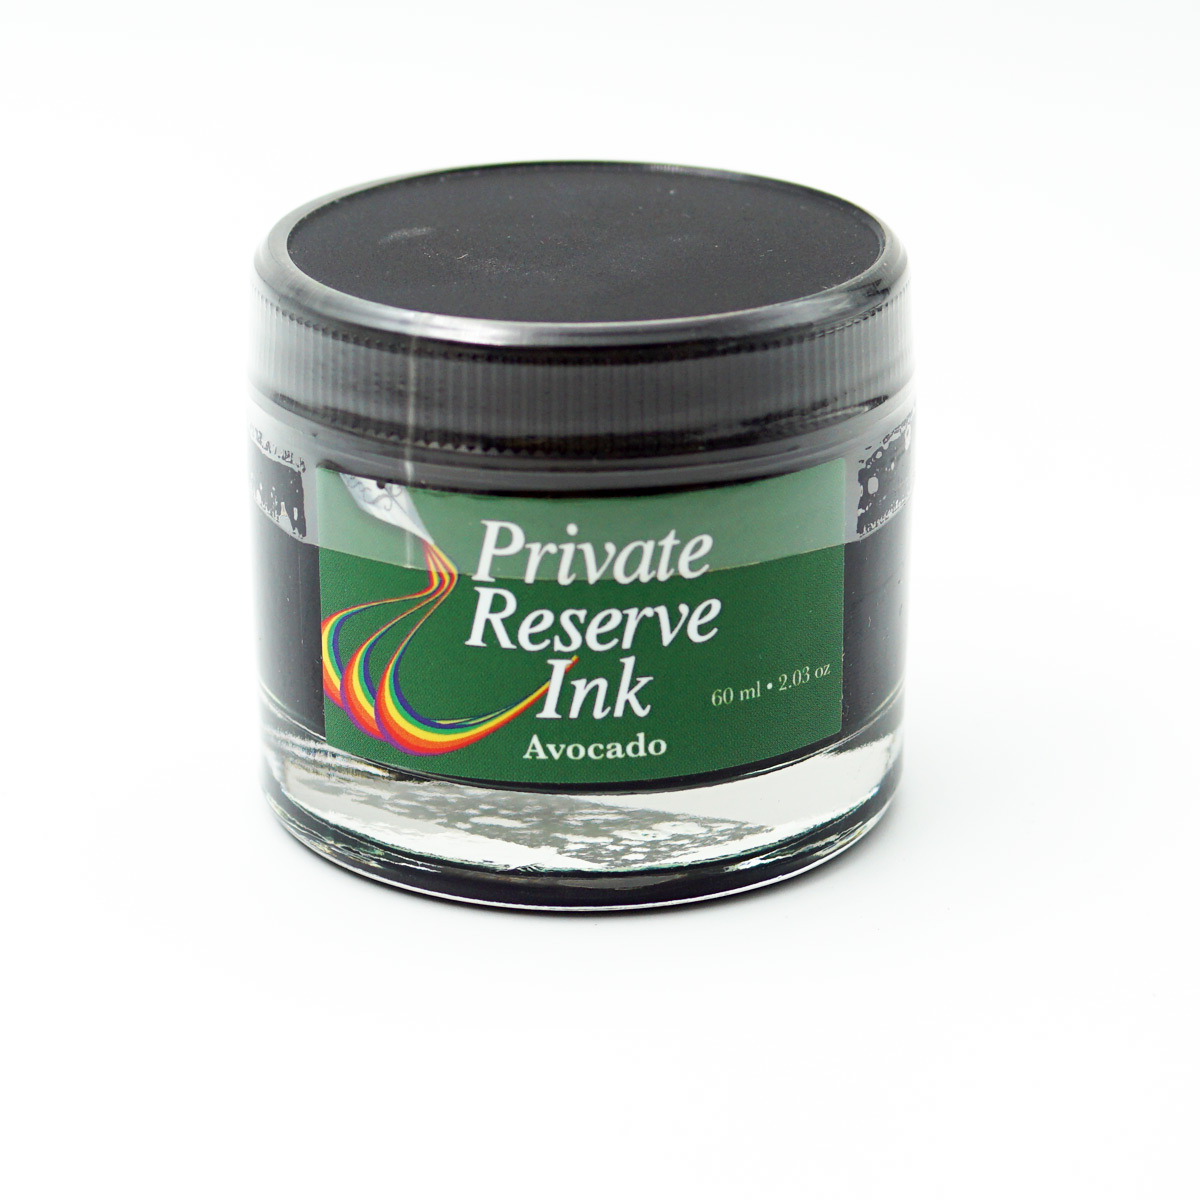 Private Reserve Ink PR17001 60ml Avocado Color Ink Bottle SKU70782